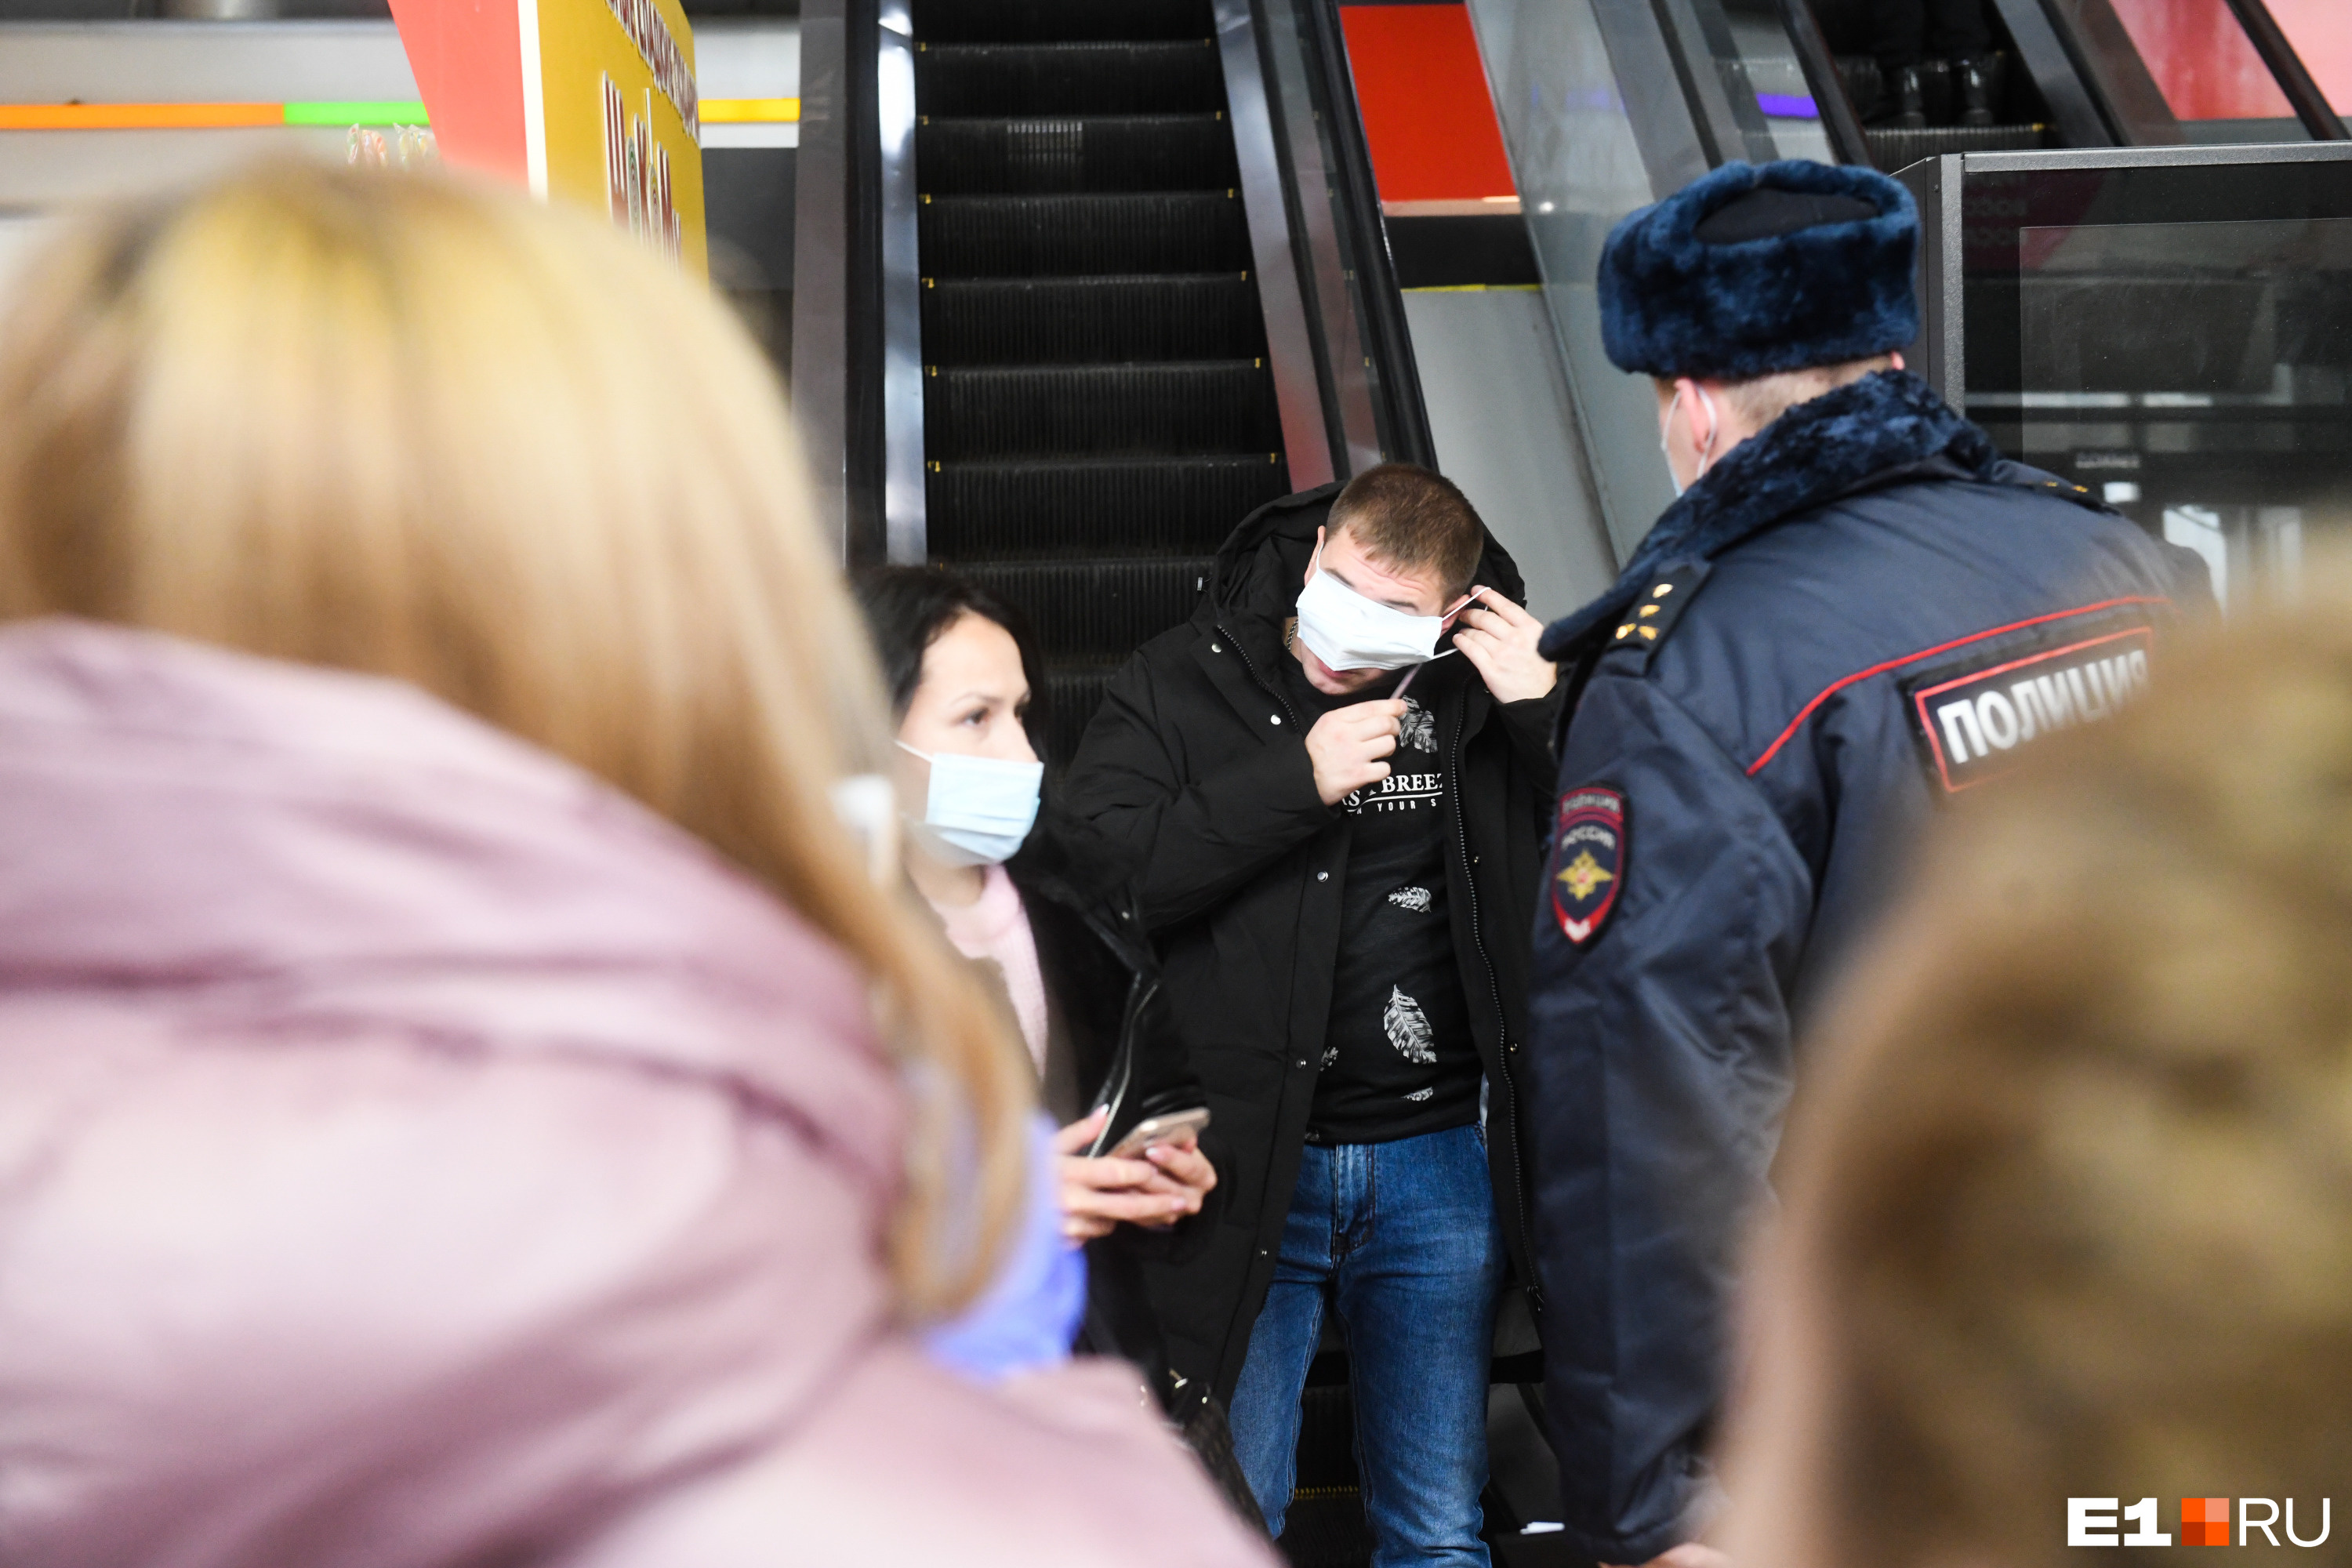 Мужчина спускался по эскалатору в торговом центре и, заметив полицейского, начал впопыхах натягивать маску